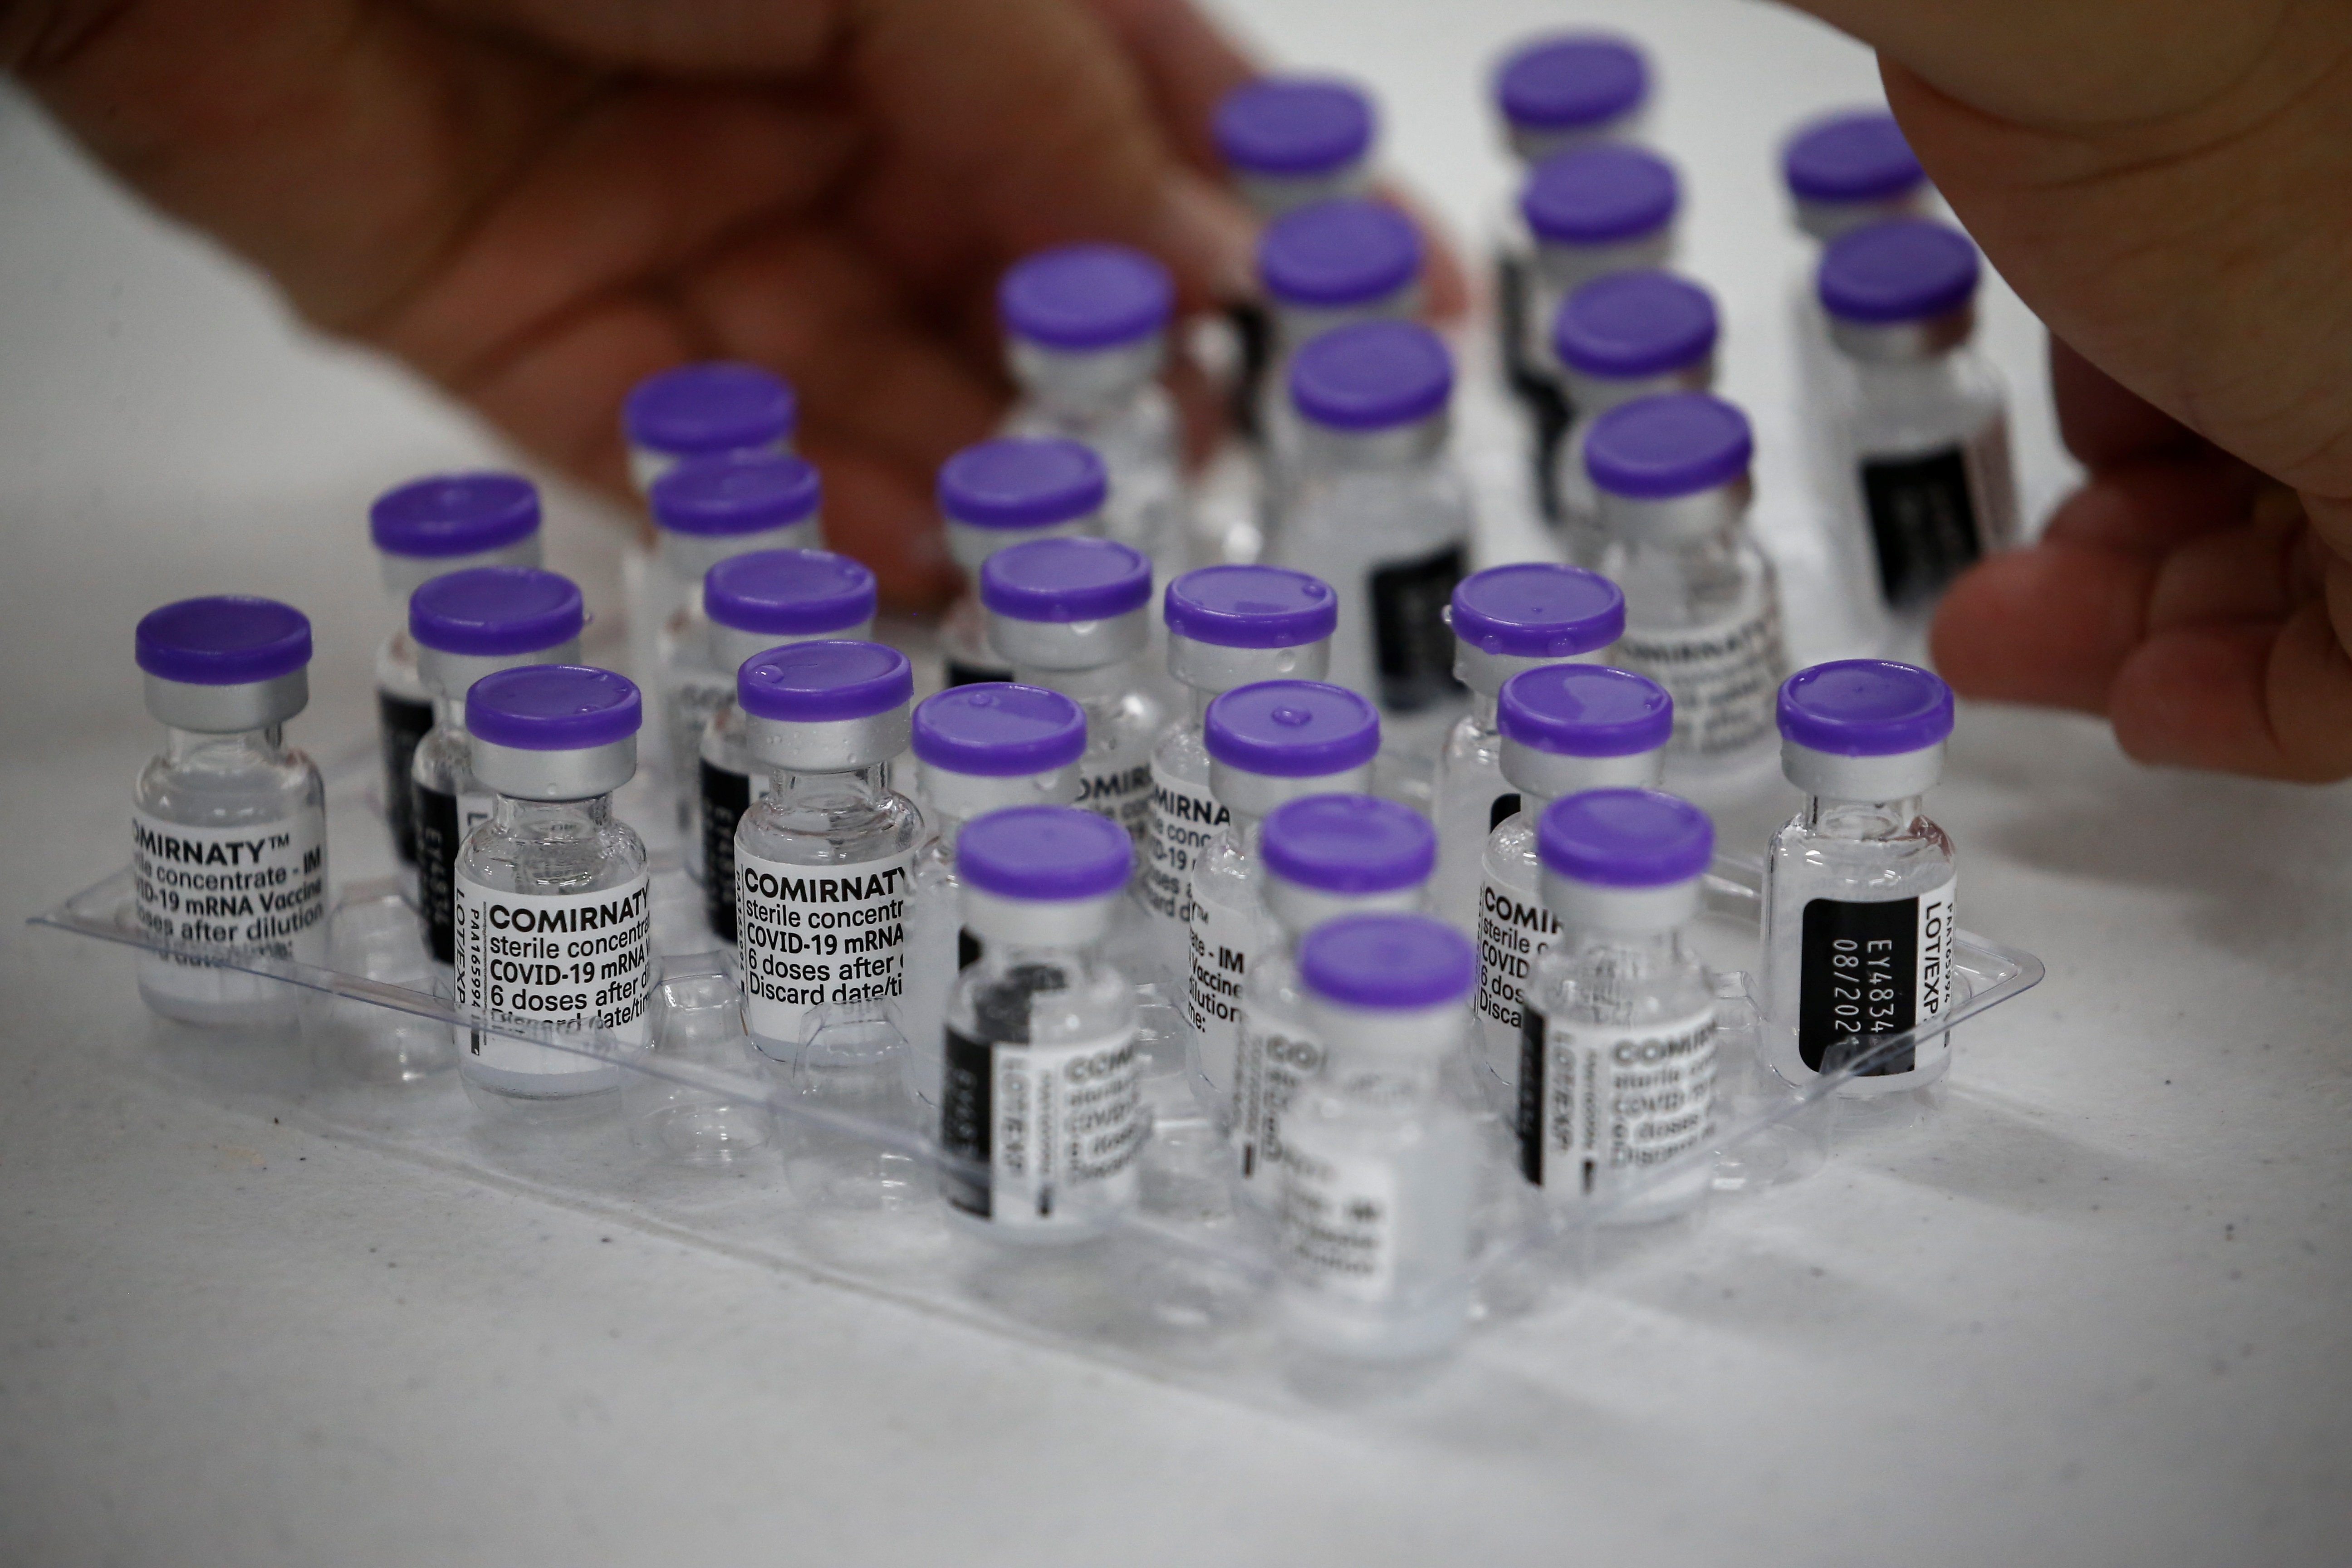 L'òmicron necessitarà una nova vacuna, segons BioNTech